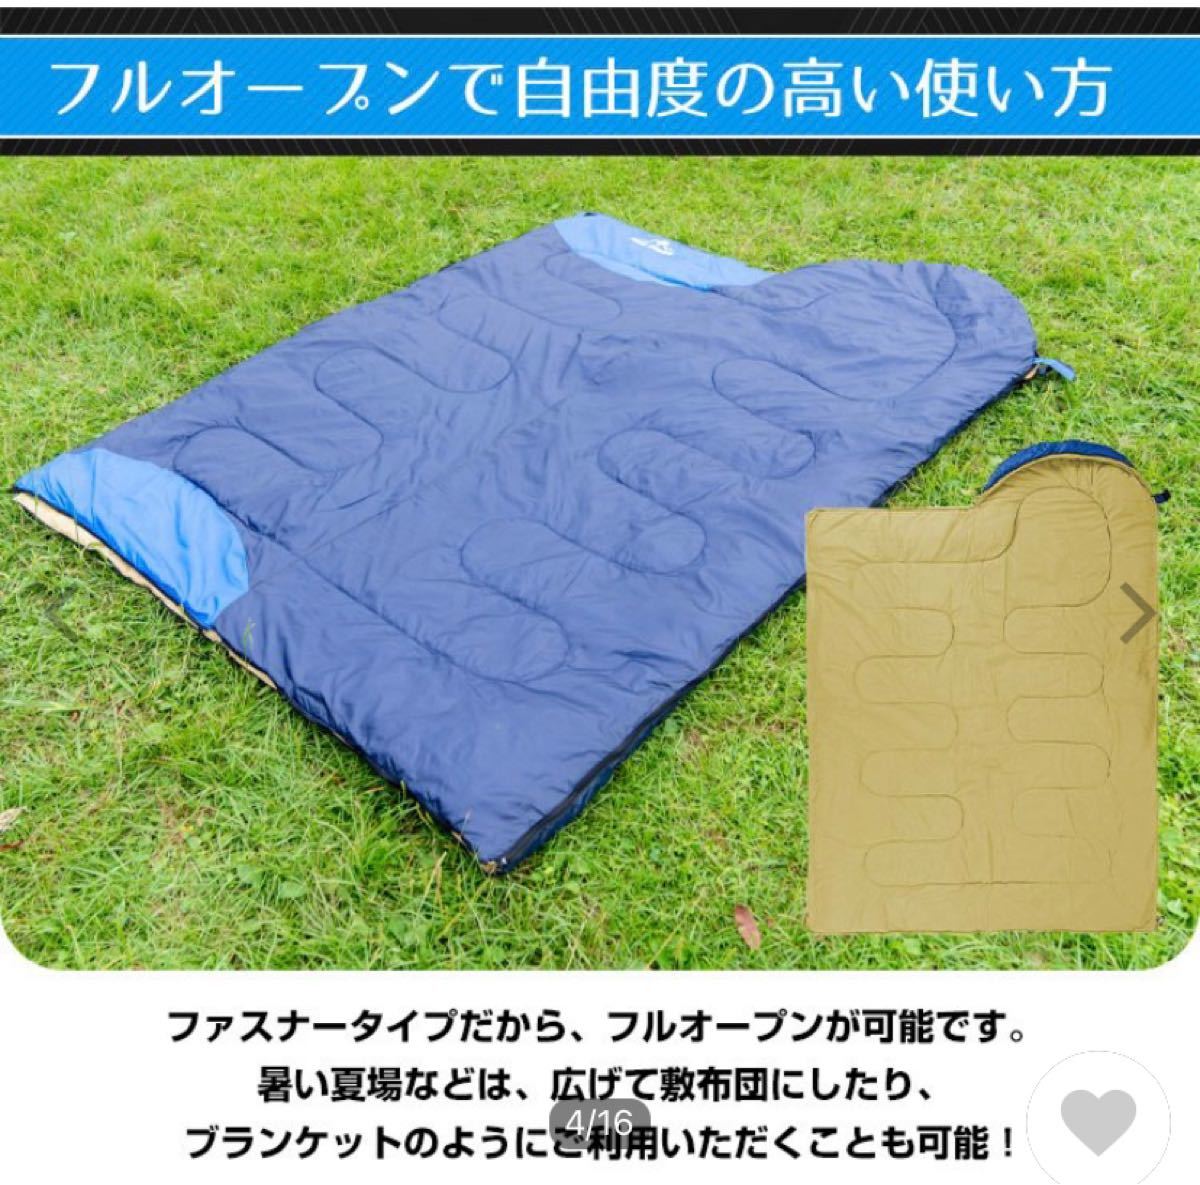 寝袋 シュラフ 封筒型寝袋 洗える 1.45kg キャンプ用品 車中泊 掛け布団 連結可能 軽量 防災  登山 防寒 非常用 